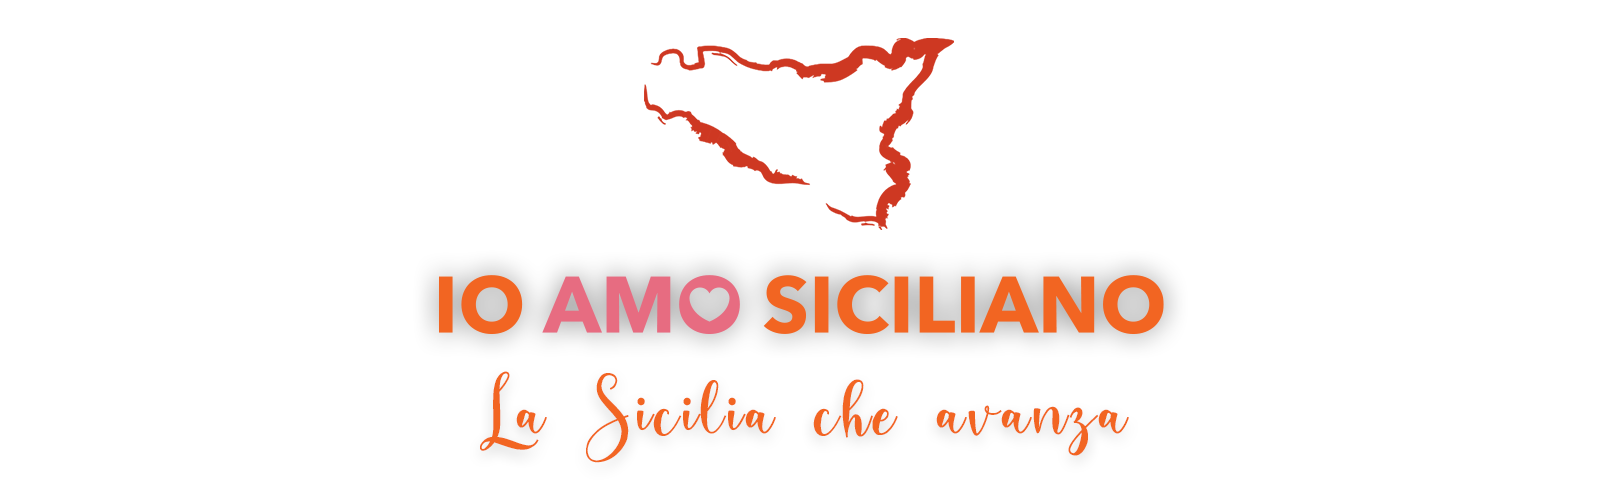 banner io amo siciliano_logo + Sicilia